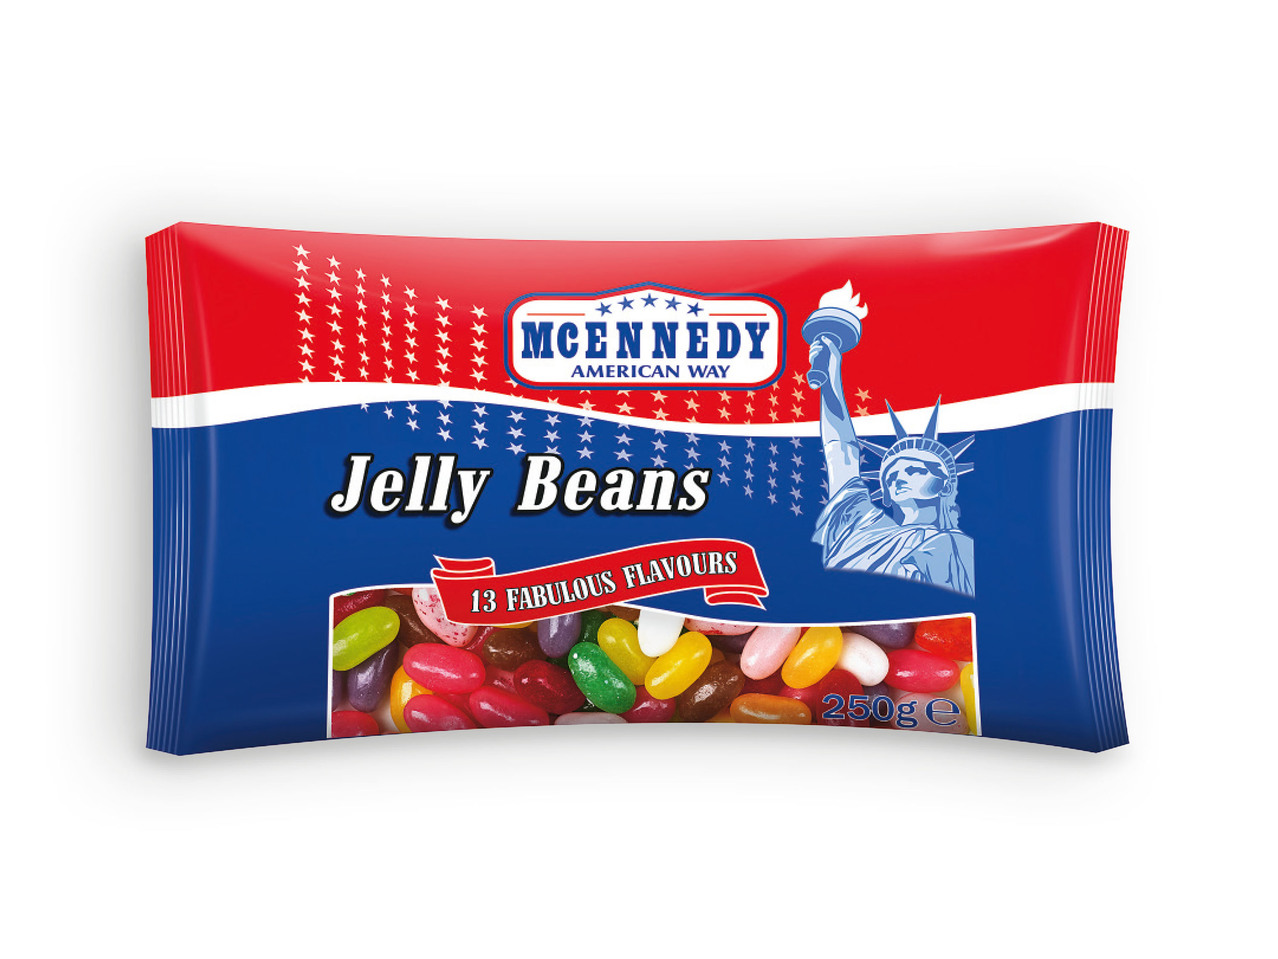 MCENNEDY(R) Jelly Beans - Drageias de Fruta